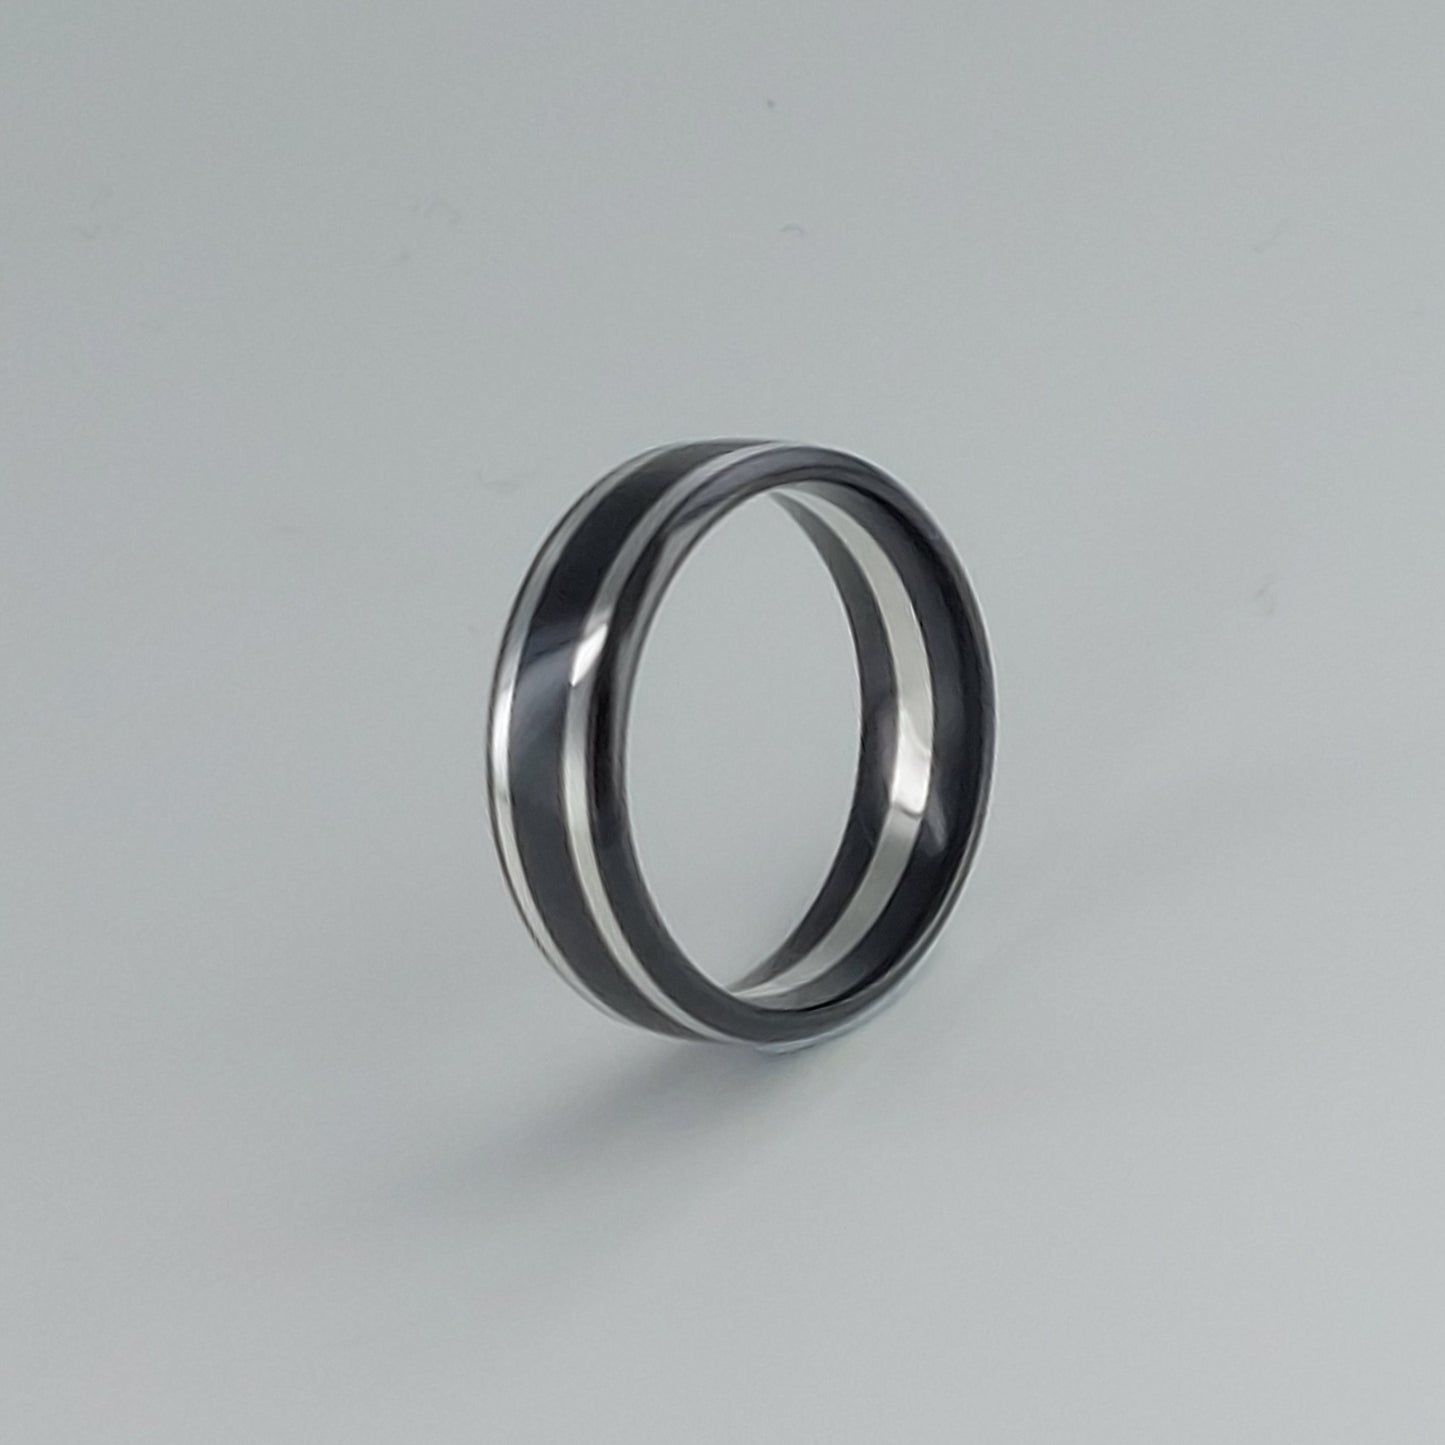 Zedd Silver Zirconium 7mm Wedding Ring